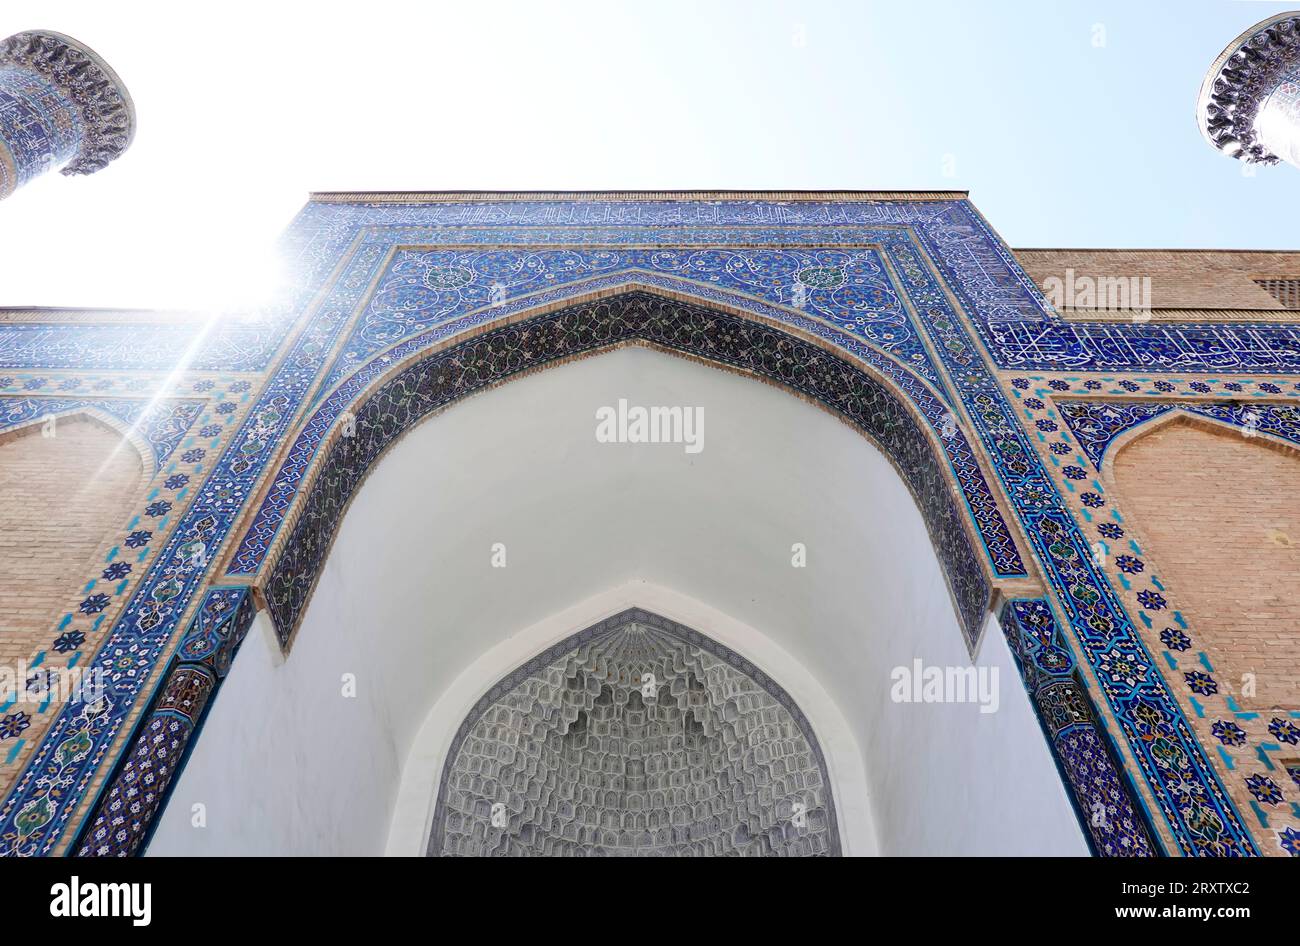 L'architecture islamique de renommée mondiale de Samarkand, site du patrimoine mondial de l'UNESCO, Ouzbékistan, Asie centrale, Asie VÉRIFIER Banque D'Images